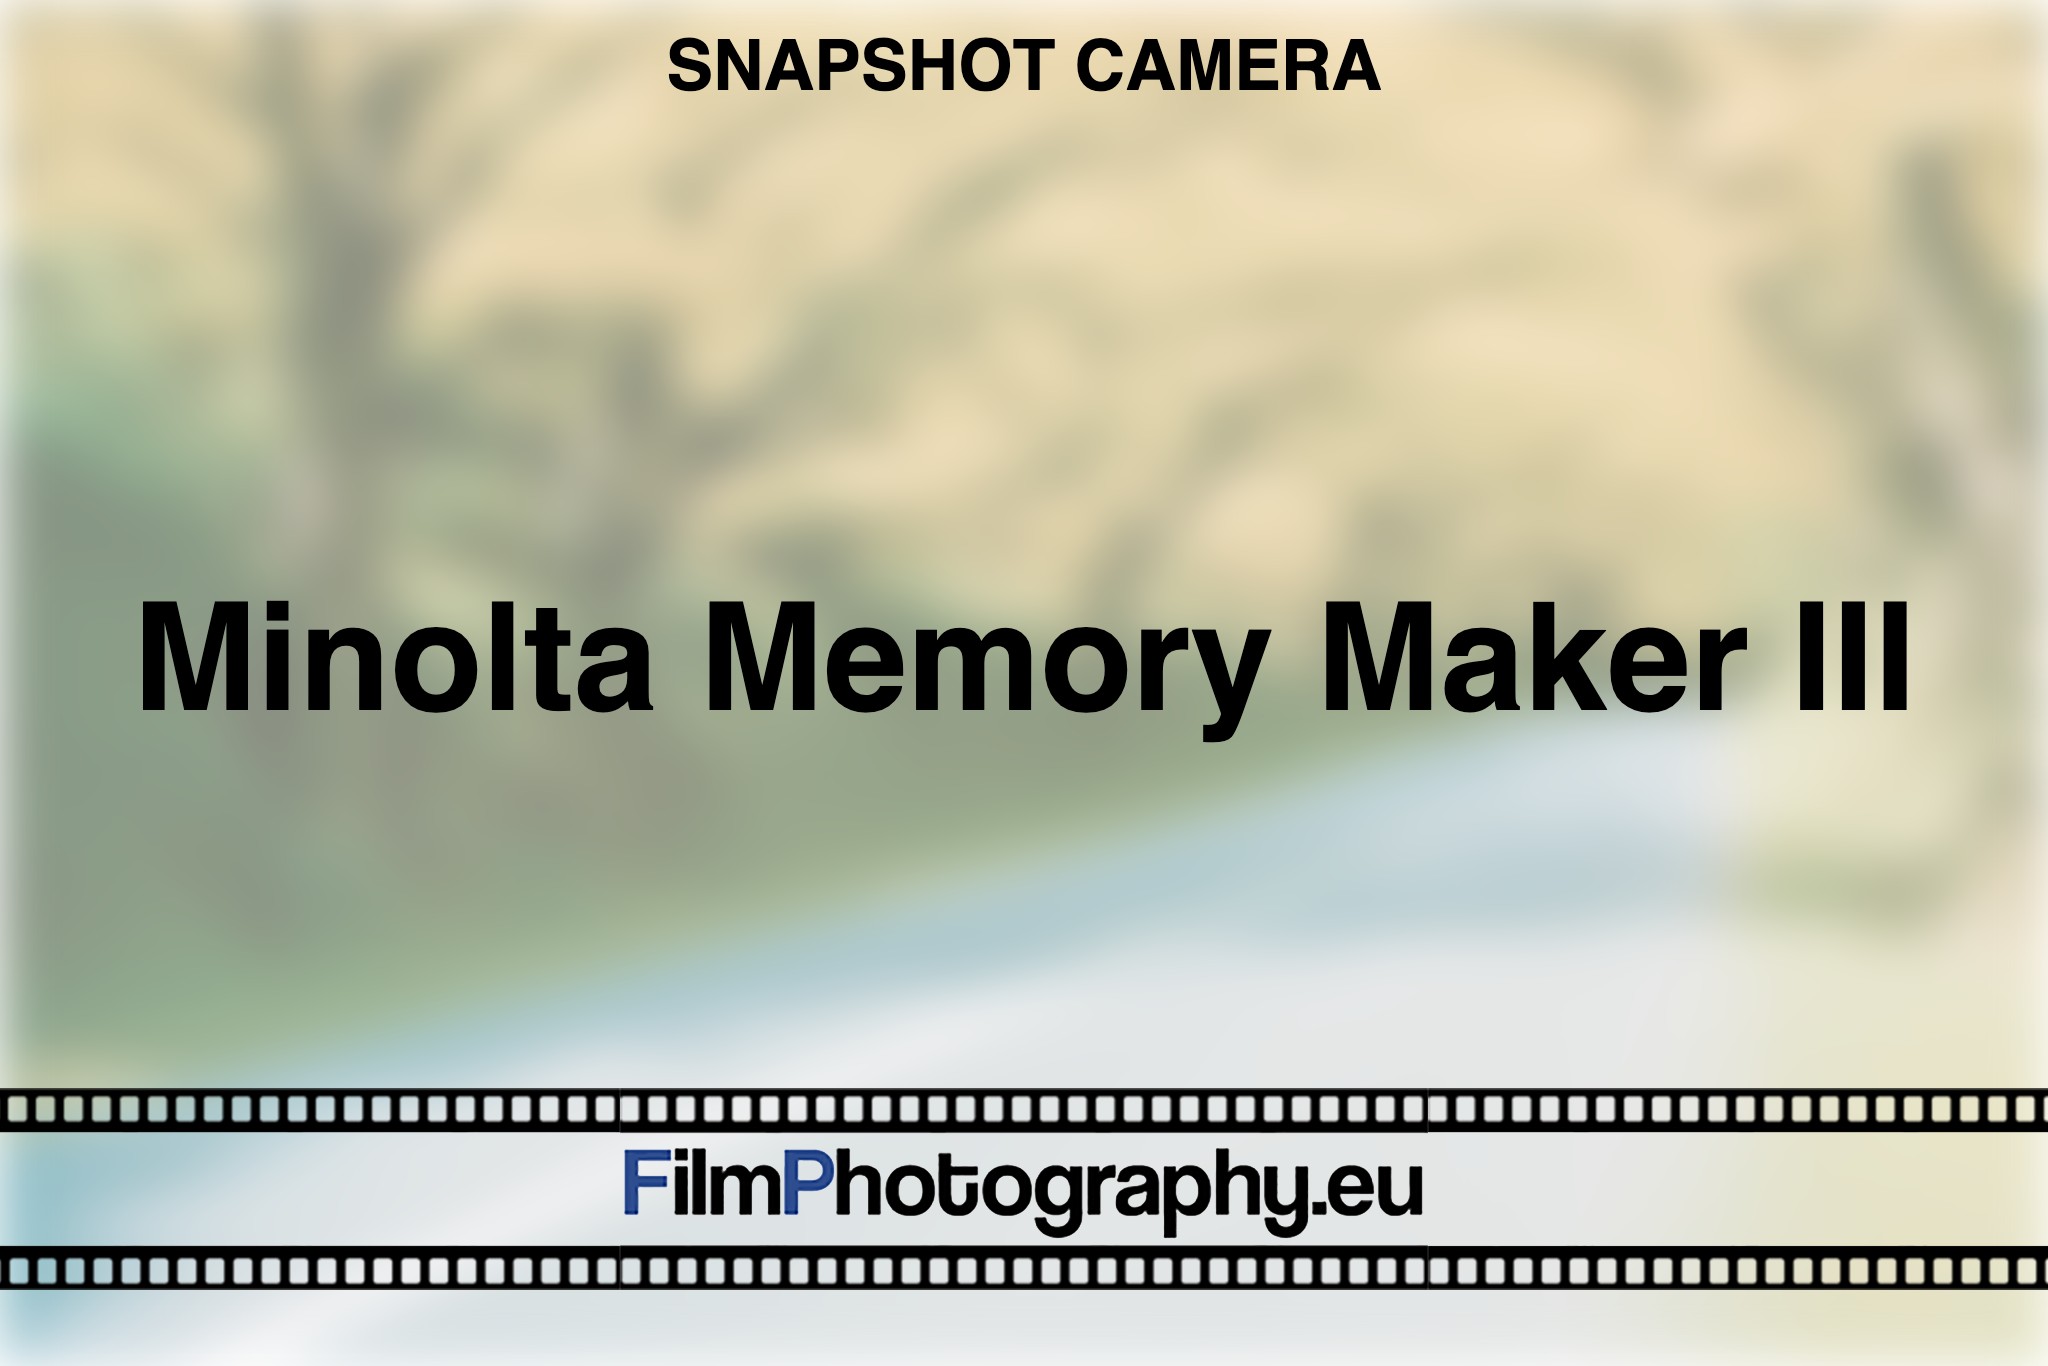 minolta-memory-maker-iii-snapshot-camera-bnv